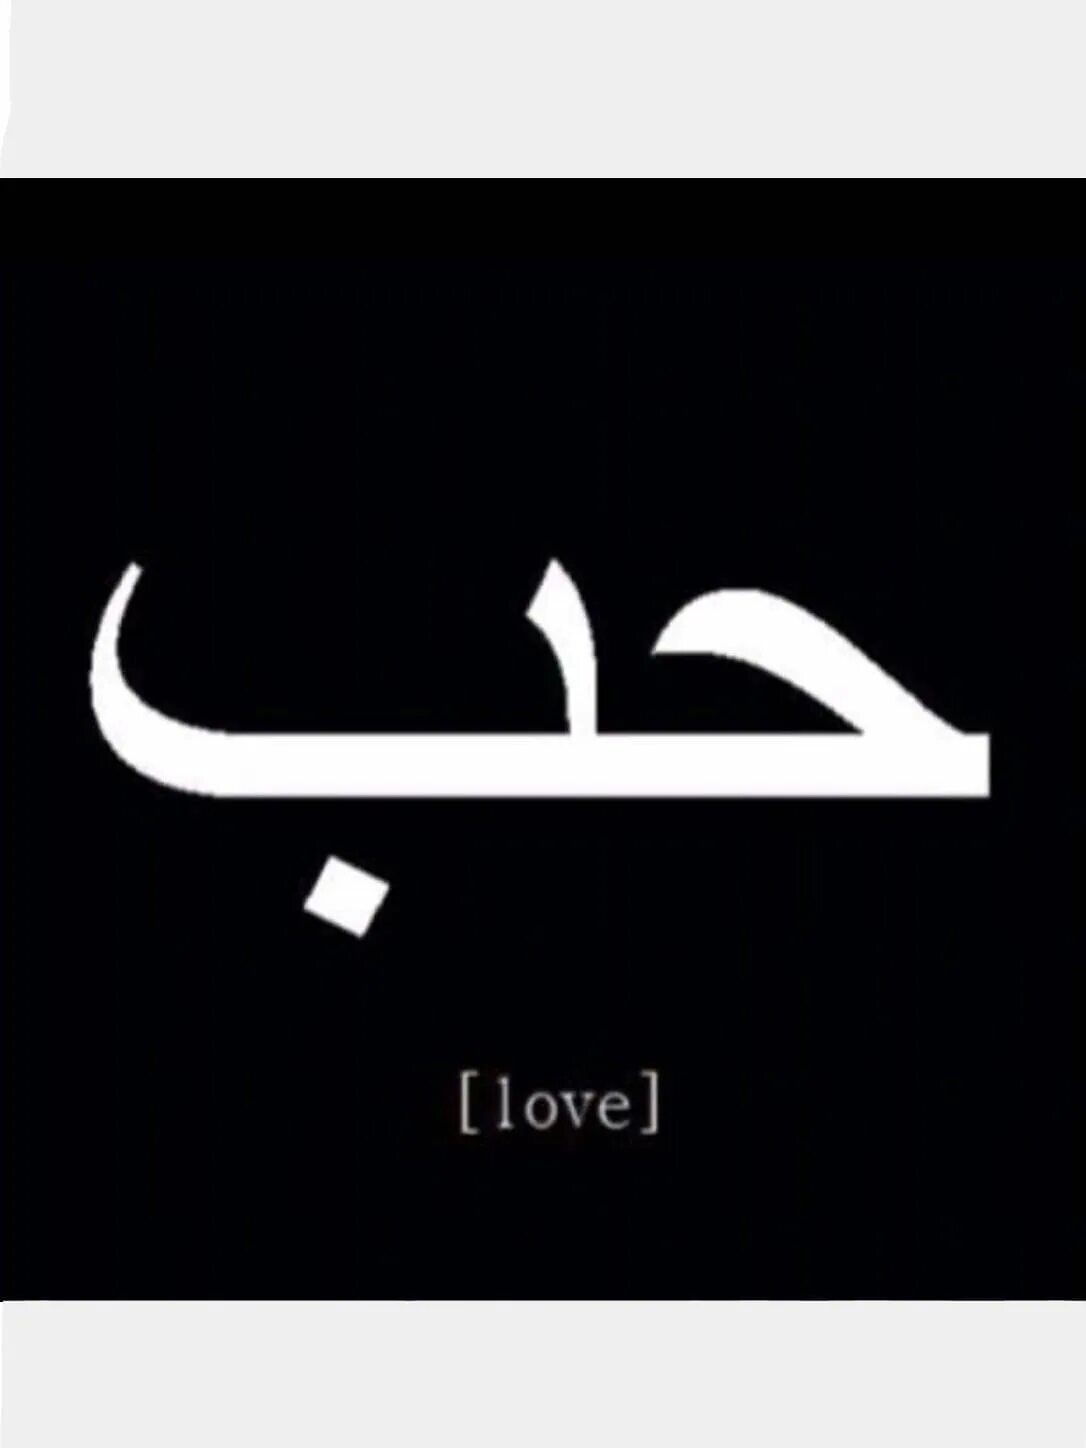 Никни на арабском. Любовь на арабском. Арабские надписи. Слово любовь на арабском. Love на арабском.